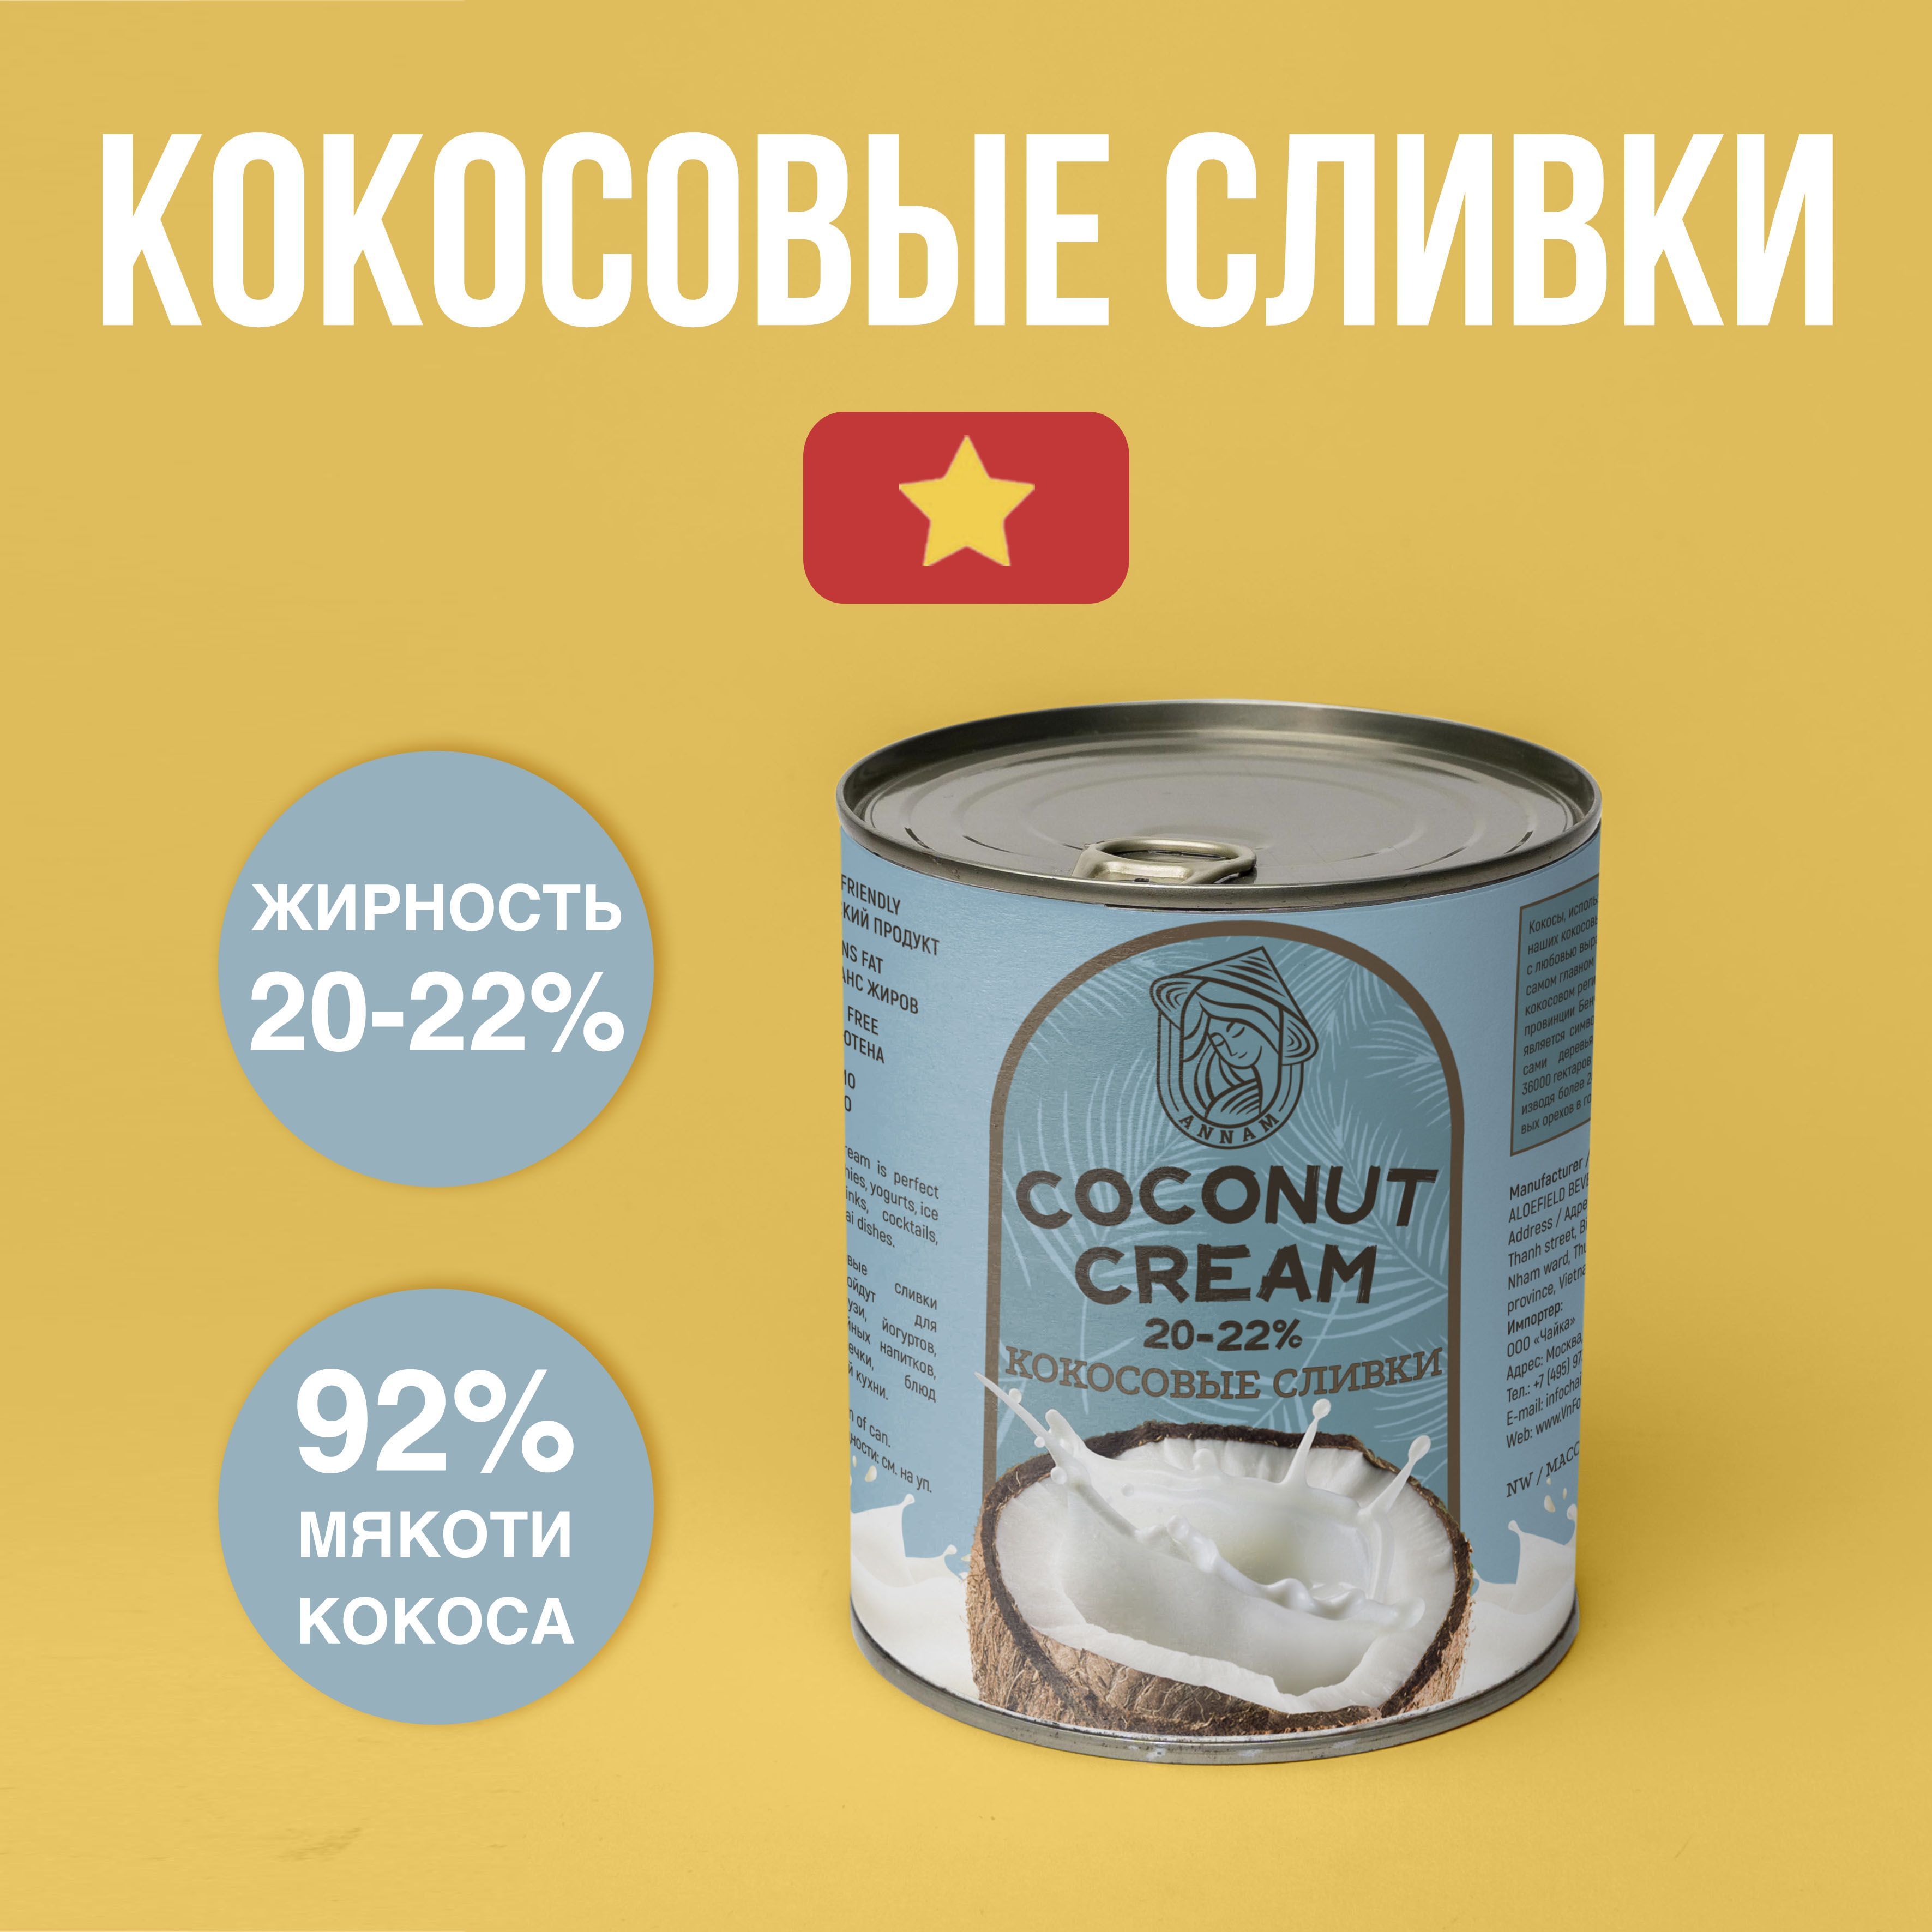 КокосовыесливкиANNAM,жирность20-22%,400г